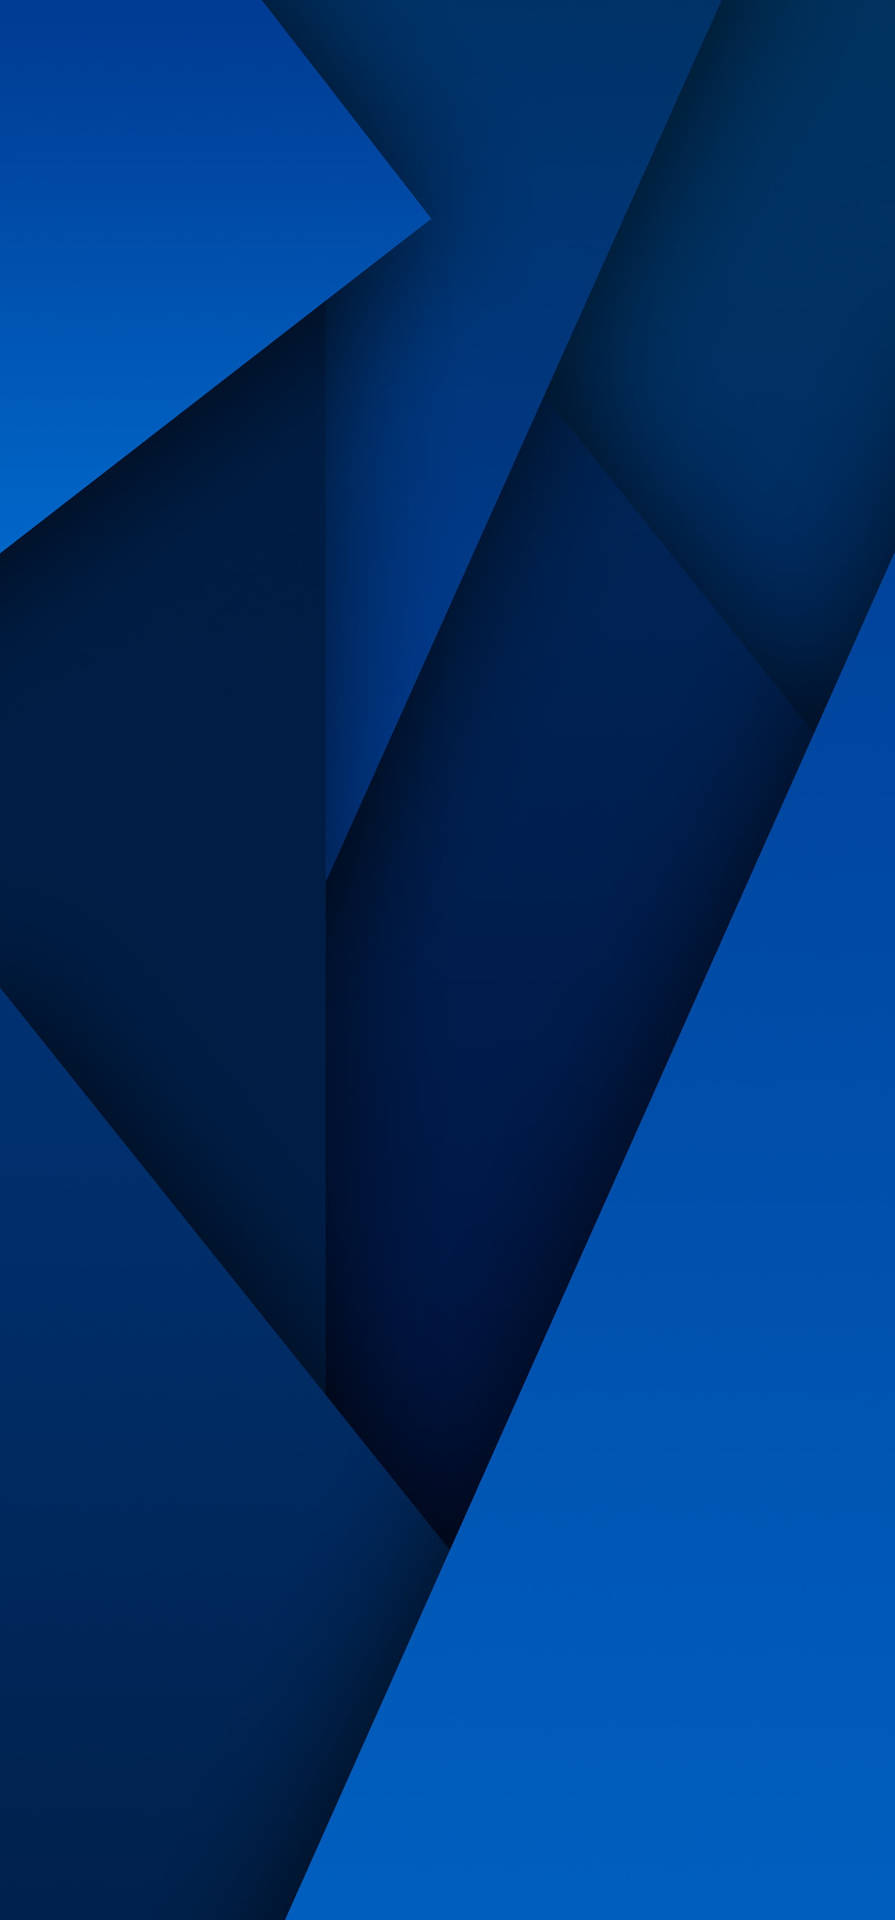 Bạn muốn tìm kiếm một mẫu hình học độc đáo để sử dụng làm hình nền cho Samsung Galaxy Note 20 Ultra của mình? Hãy xem qua bộ sưu tập các mẫu hình học đẹp mắt này trên trang web của chúng tôi. Với nhiều mẫu mã và kiểu dáng khác nhau, bạn sẽ không thể bỏ qua chúng!